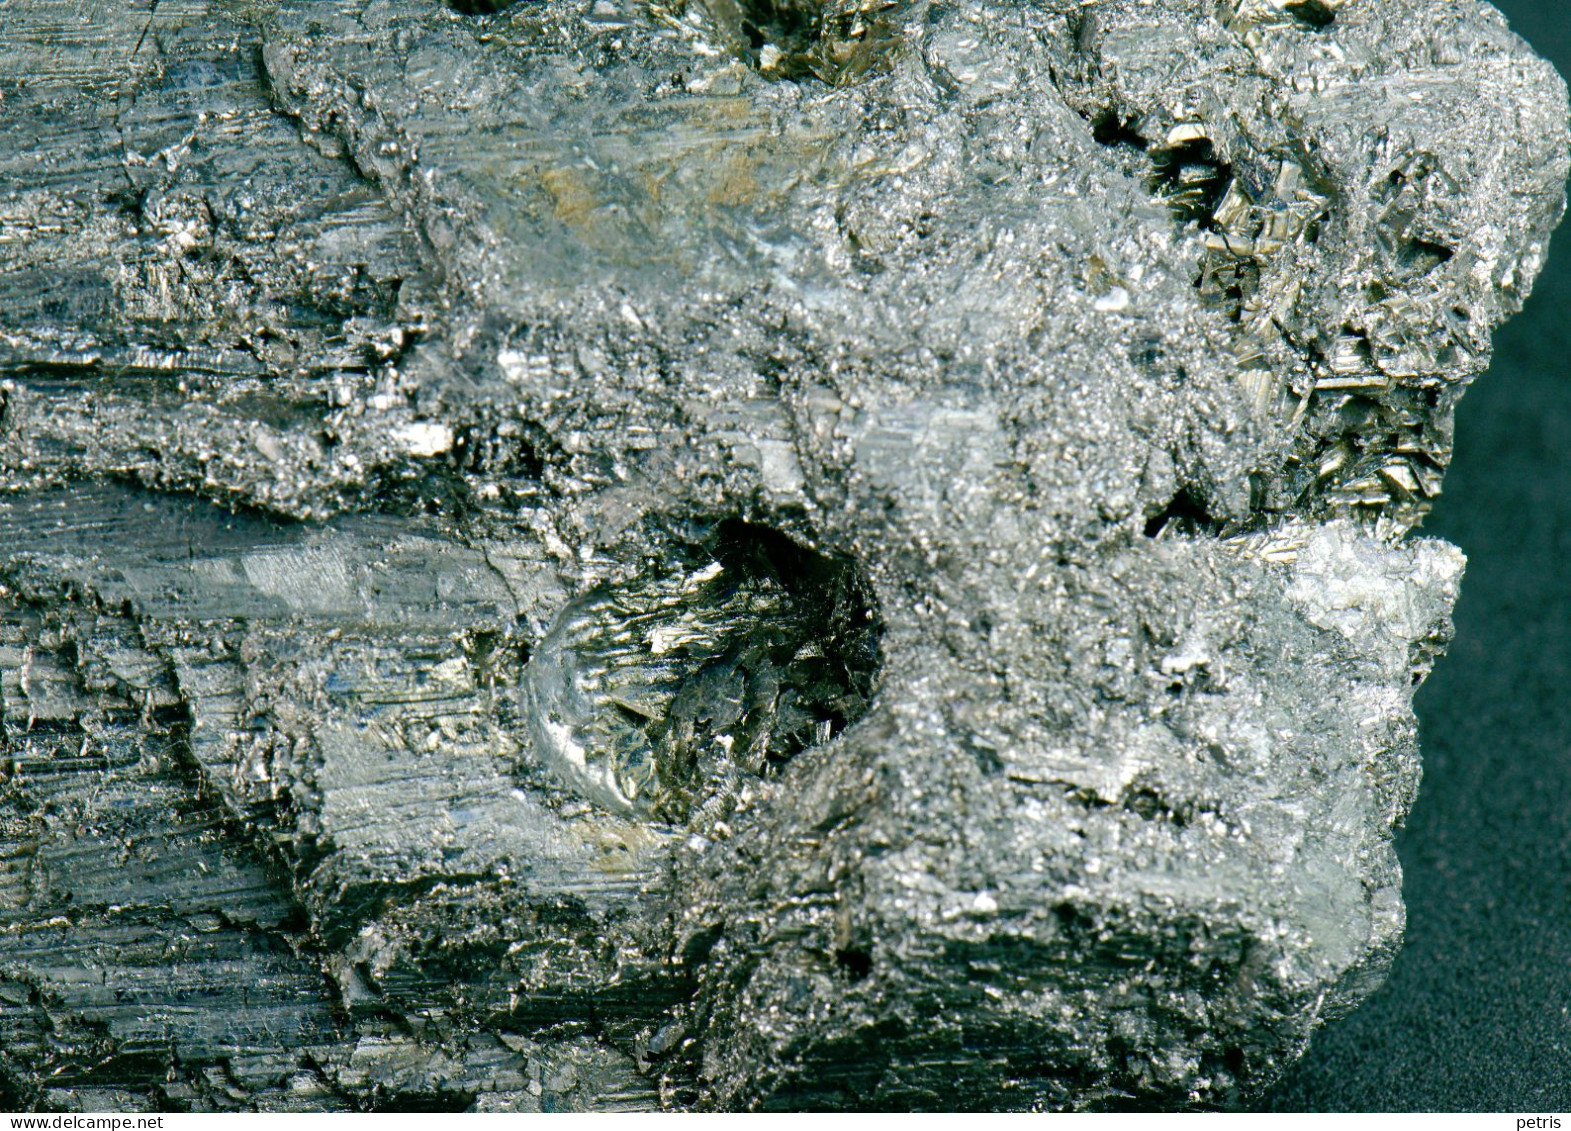 Mineral - Antimonite - Stibnite (Maramurres, Romania) - Lot. 1163 - Minerals